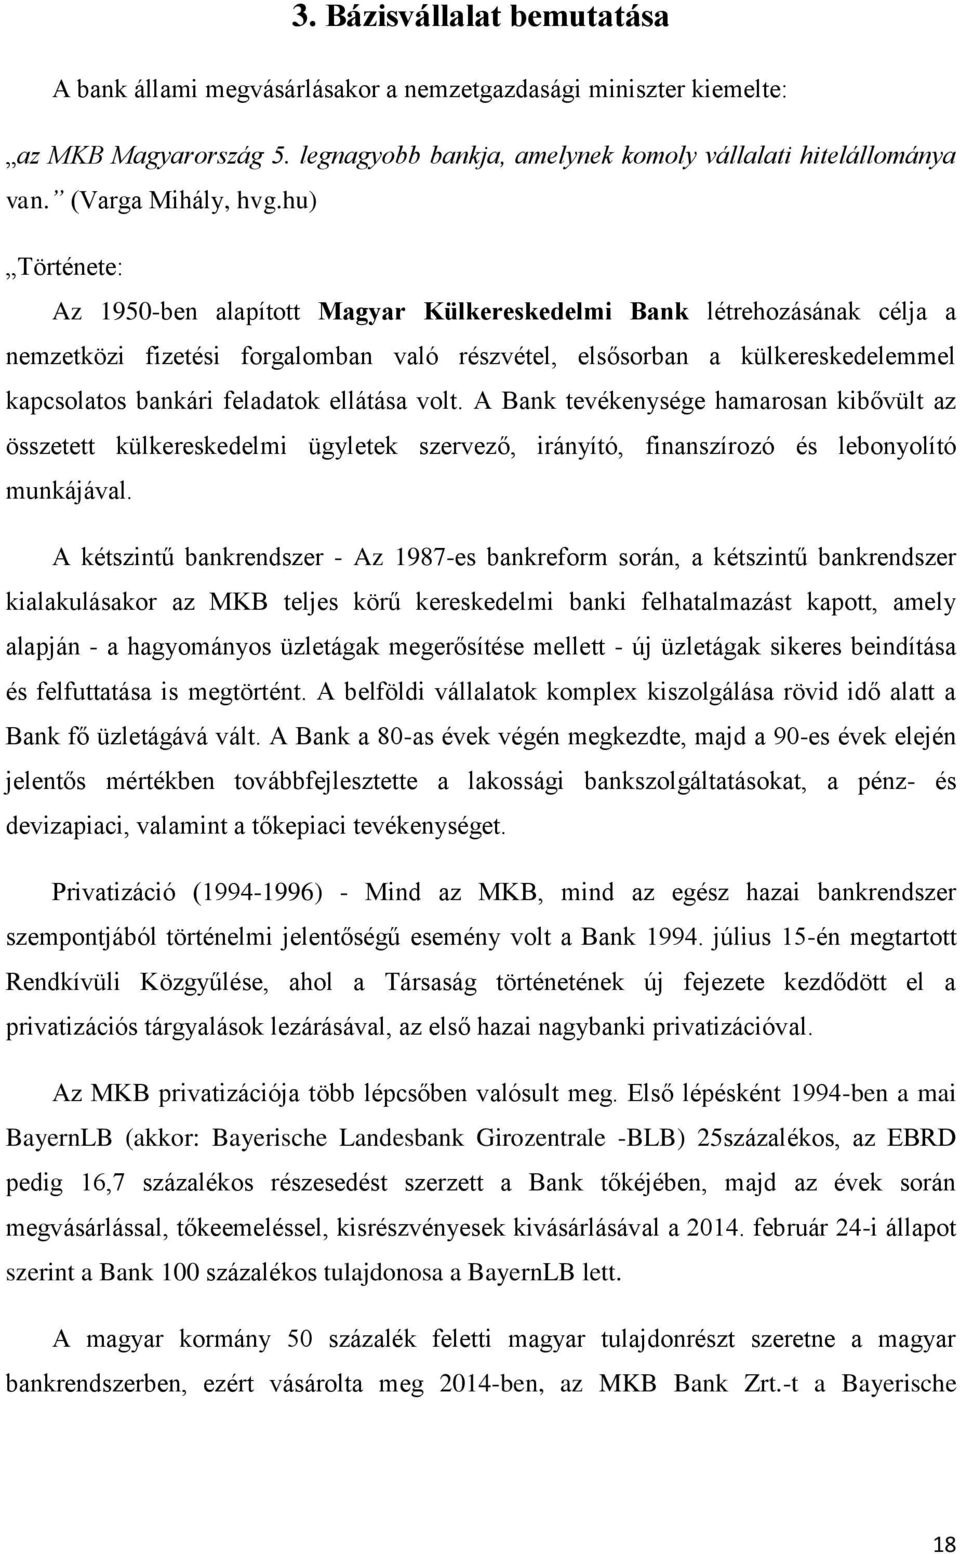 hu) Története: Az 1950-ben alapított Magyar Külkereskedelmi Bank létrehozásának célja a nemzetközi fizetési forgalomban való részvétel, elsősorban a külkereskedelemmel kapcsolatos bankári feladatok